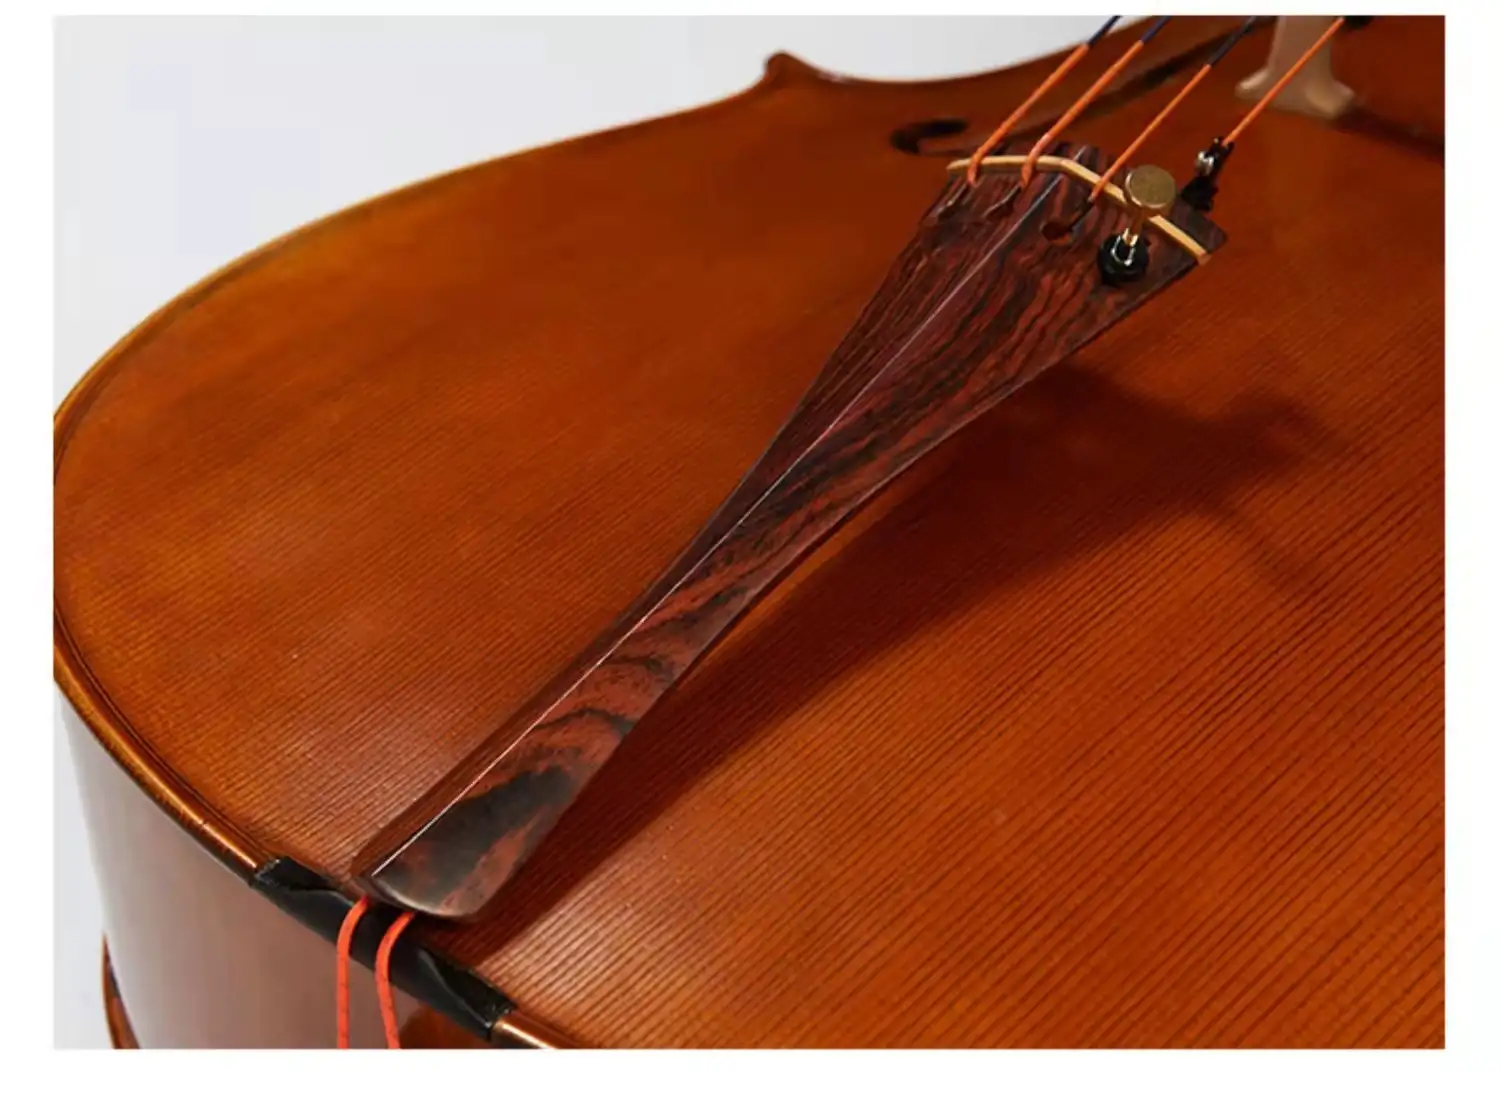 Cello Làm Bằng Tay Chuyên Nghiệp Bằng Gỗ Rắn Thích Hợp Để Chơi Chuyên Nghiệp